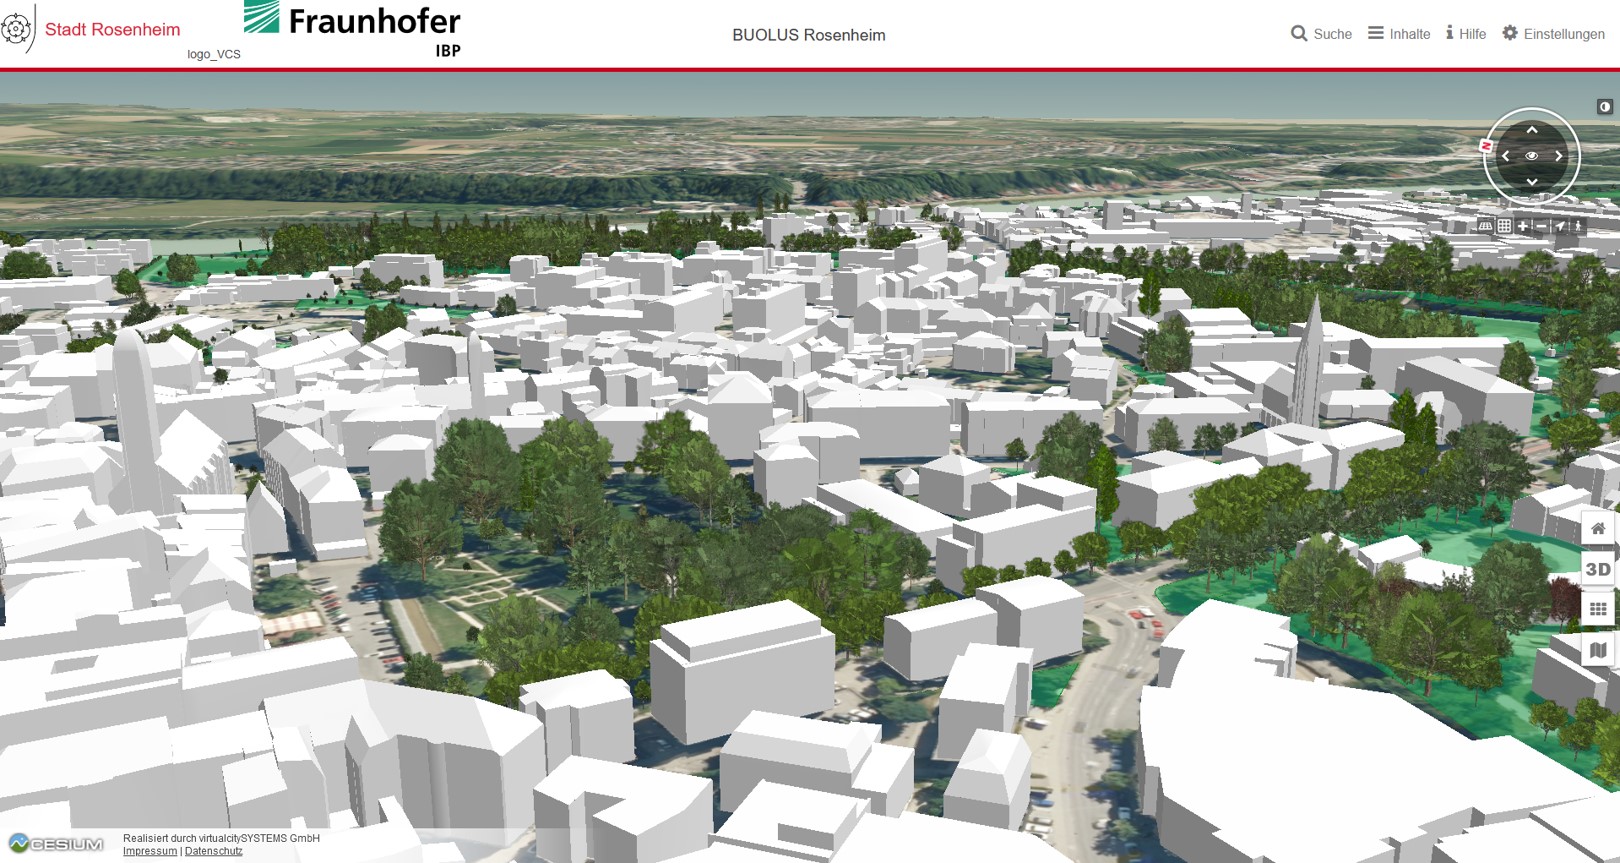 3D model of the city Rosenheim